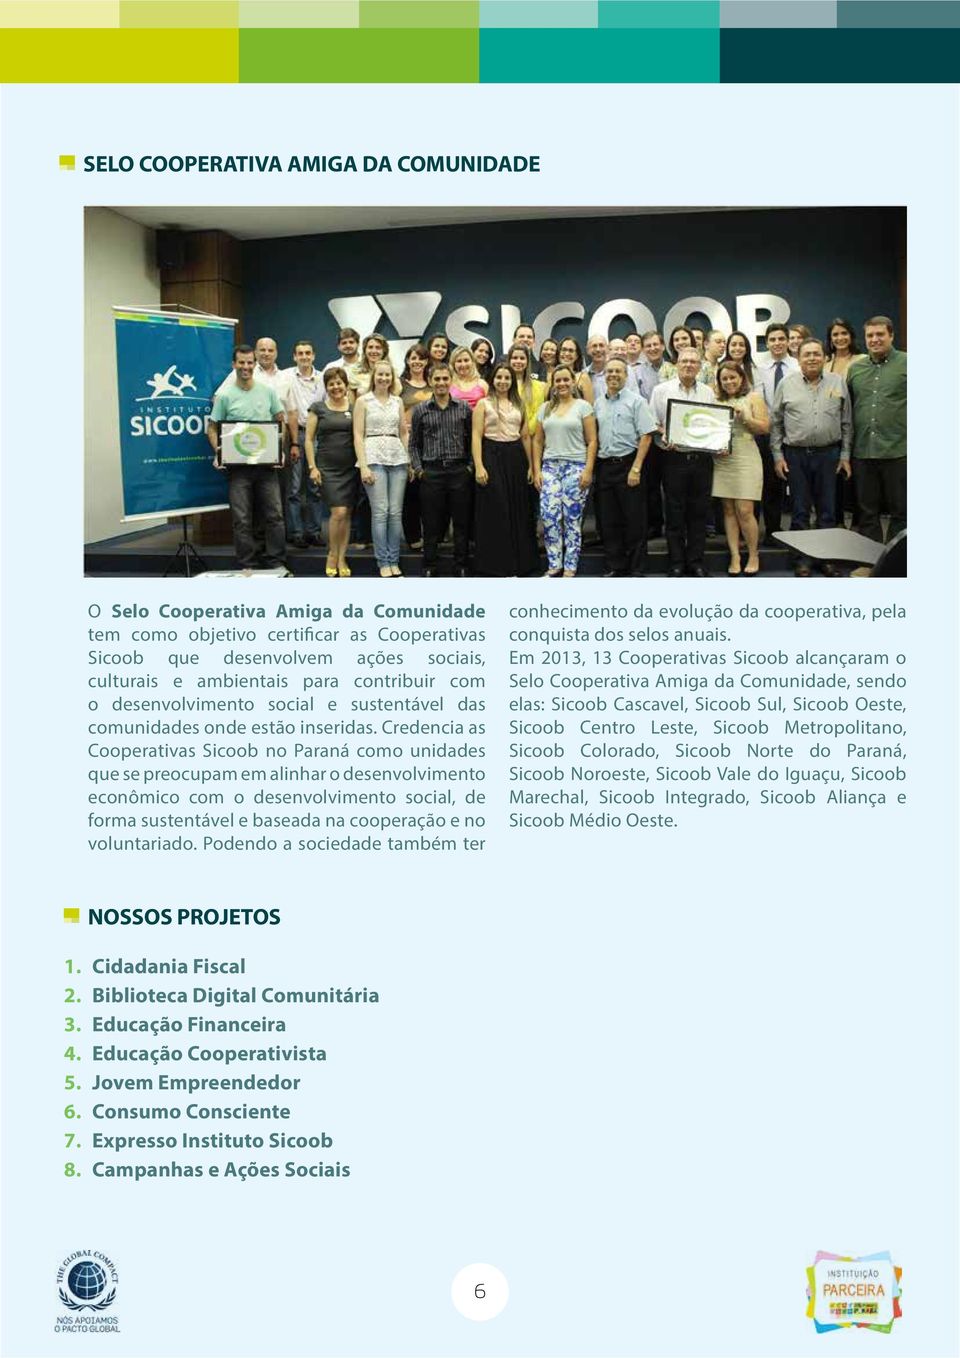 Credencia as Cooperativas Sicoob no Paraná como unidades que se preocupam em alinhar o desenvolvimento econômico com o desenvolvimento social, de forma sustentável e baseada na cooperação e no